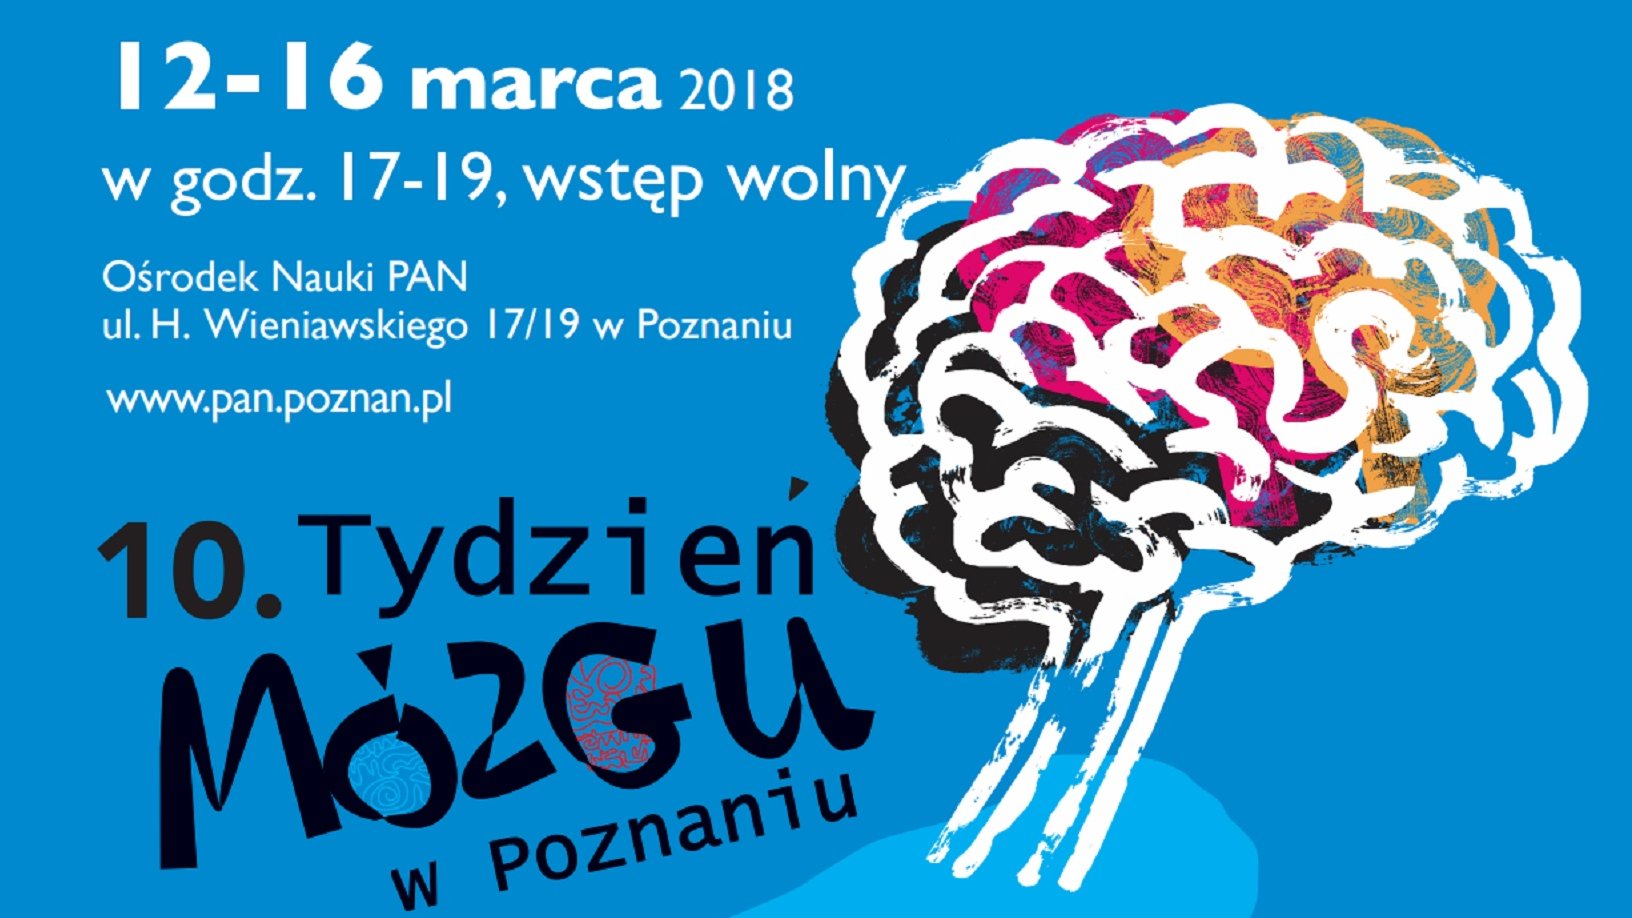 Tydzień Mózgu rozpoczął się 12 marca/fot.pan.poznan.pl